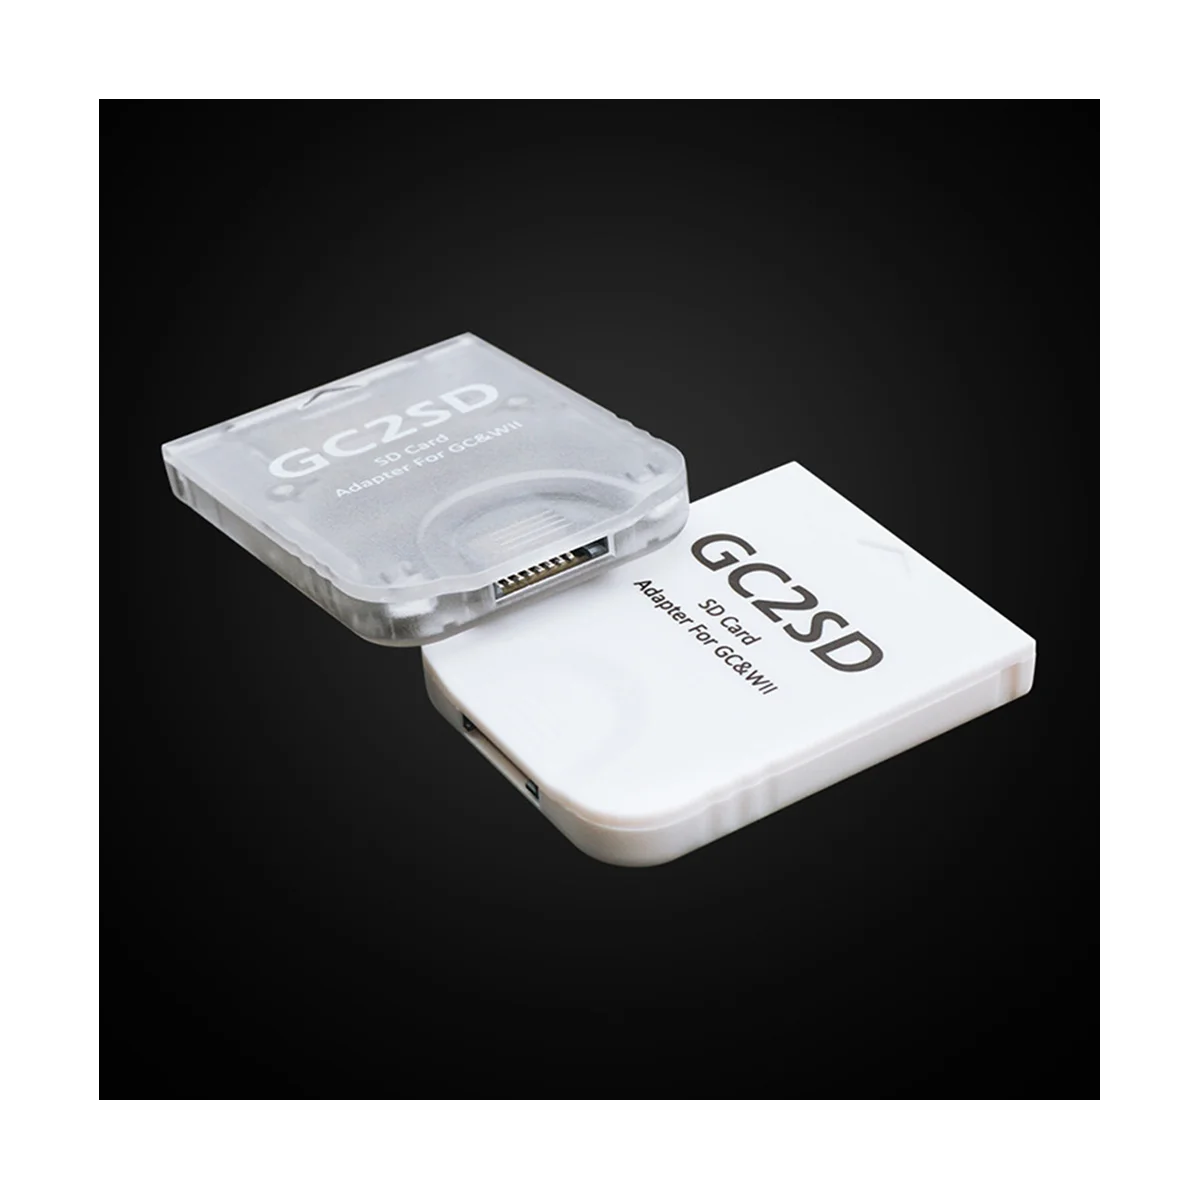 Adaptador de tarjeta GC2SD GC a SD para consola de juegos NGC GameCube Wii (C)